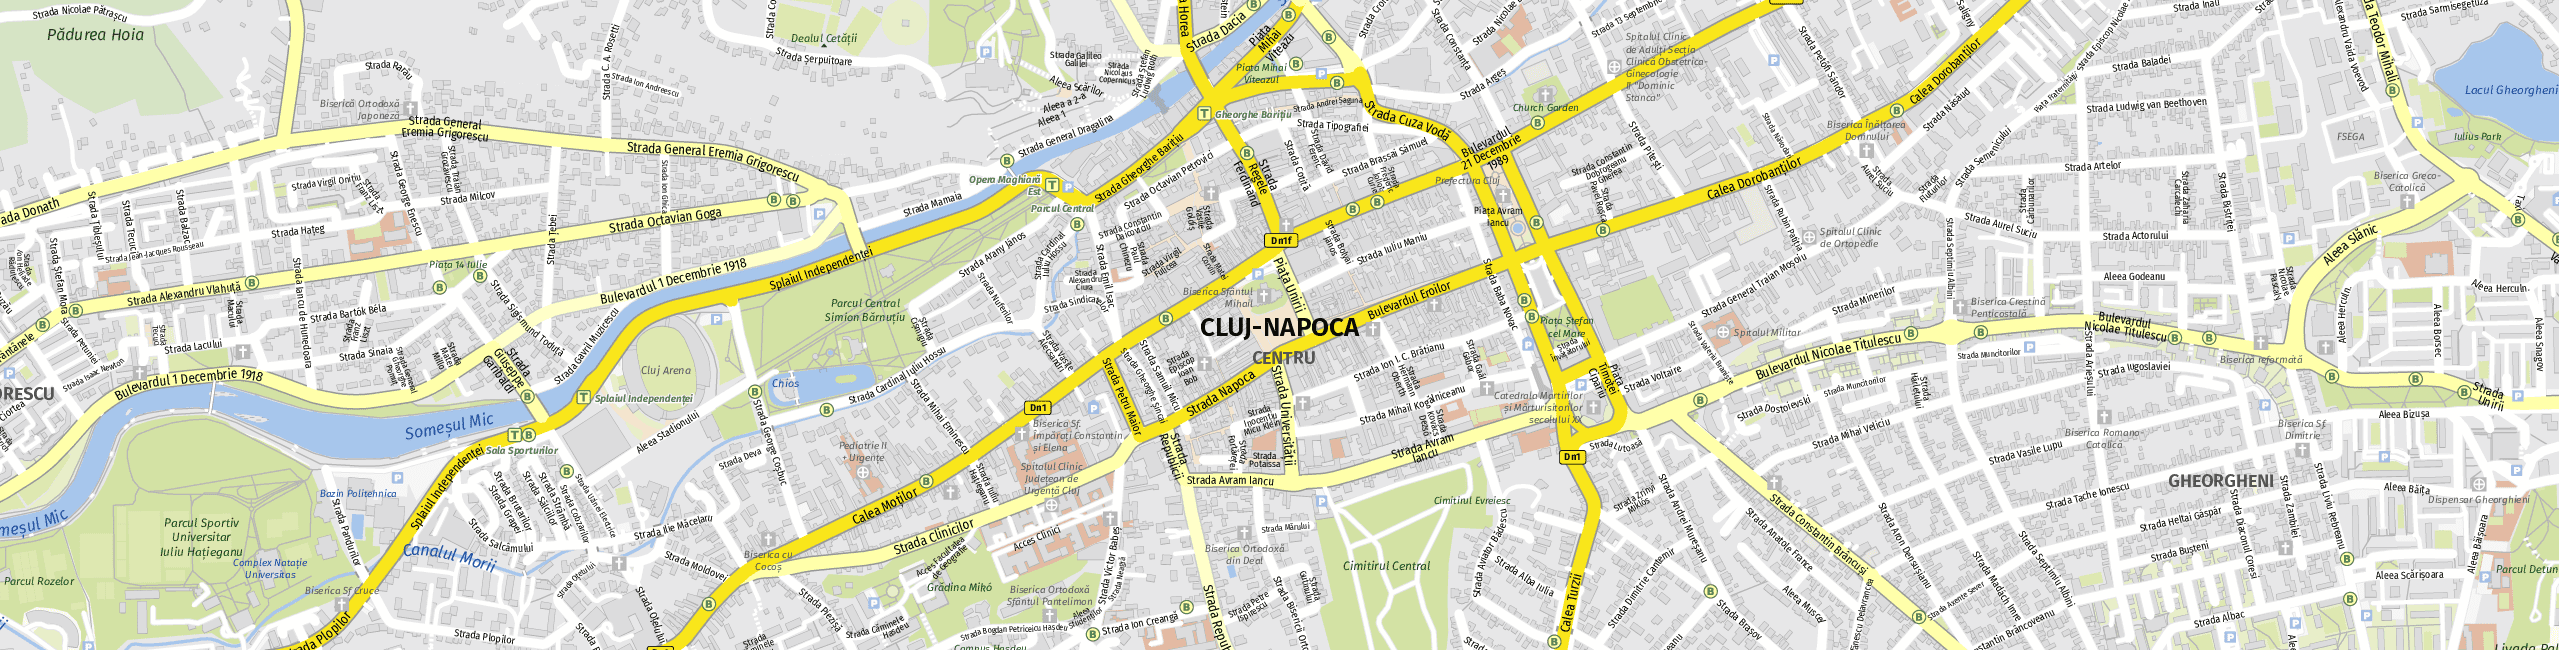 Stadtplan Cluj-Napoca zum Downloaden.